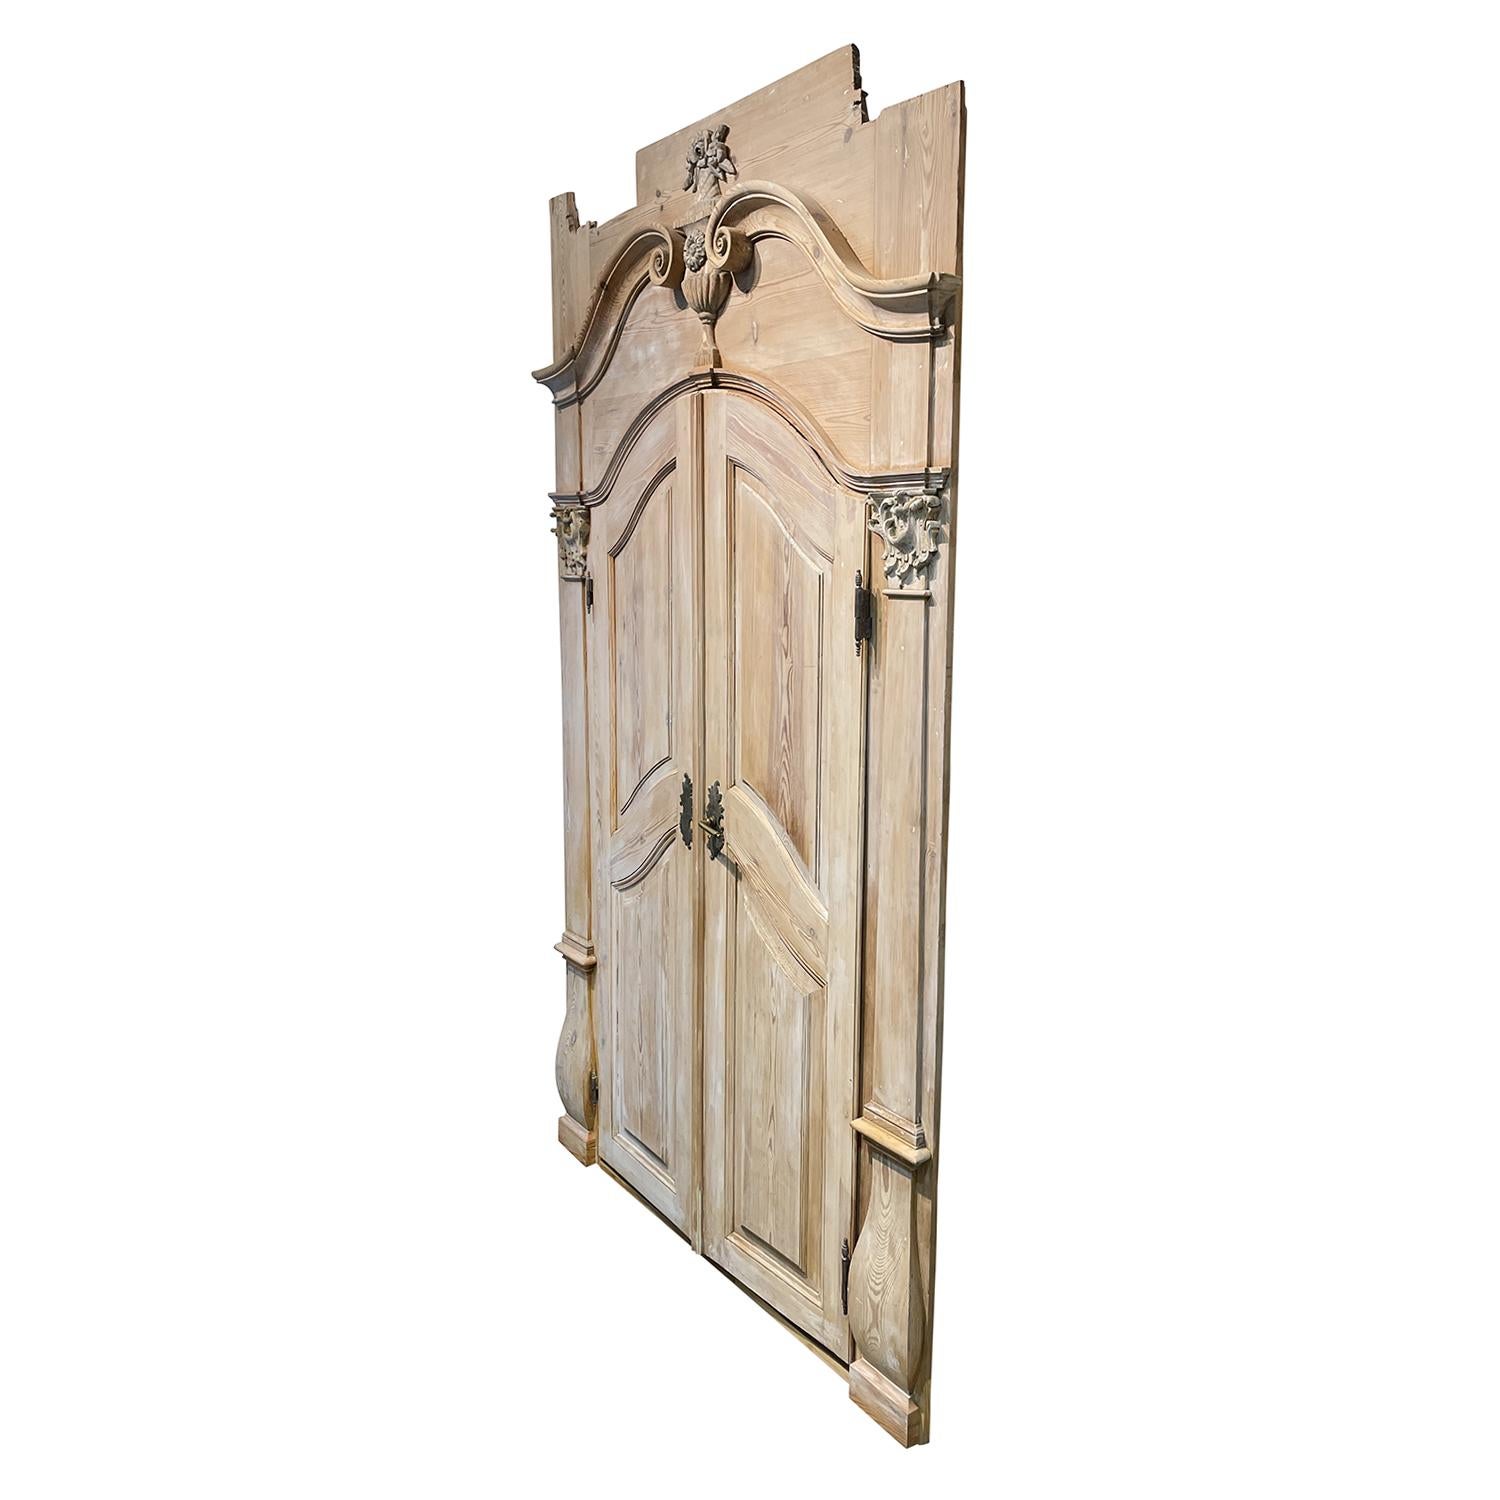 Ancienne porte d'entrée baroque autrichienne en bois de pin travaillé à la main, en bon état. La double porte restaurée de Salzbourg est constituée de sa quincaillerie et de sa clé d'origine. Légères décolorations, rayures dues à l'âge. Usure